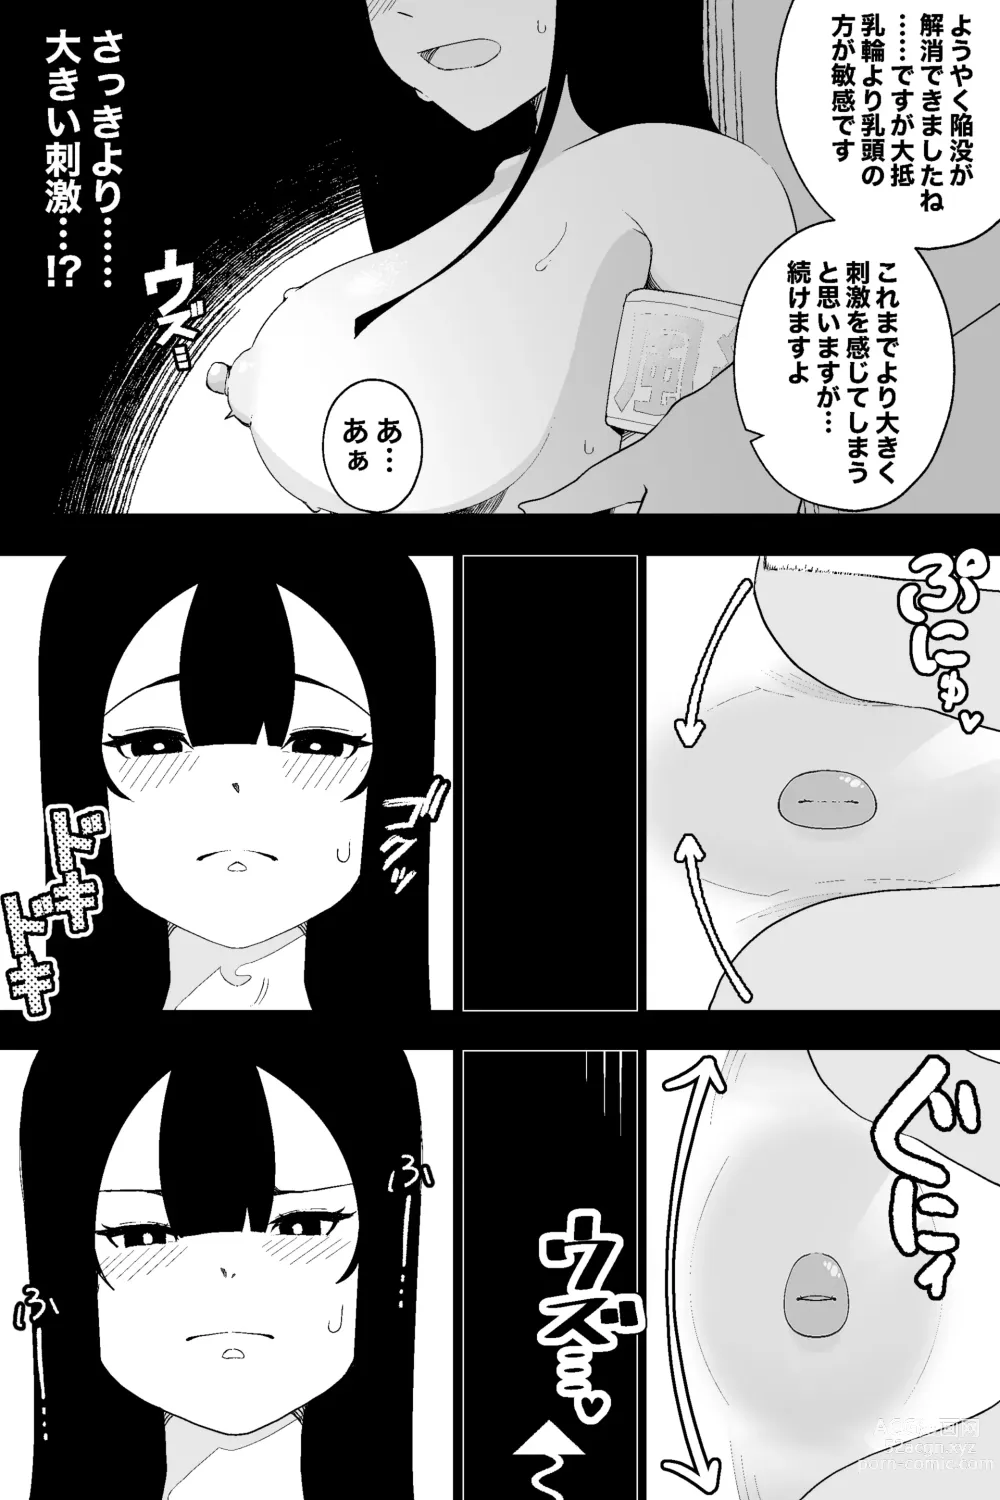 Page 16 of doujinshi Fuuki Iinchou VS  Chikubi Kairaku